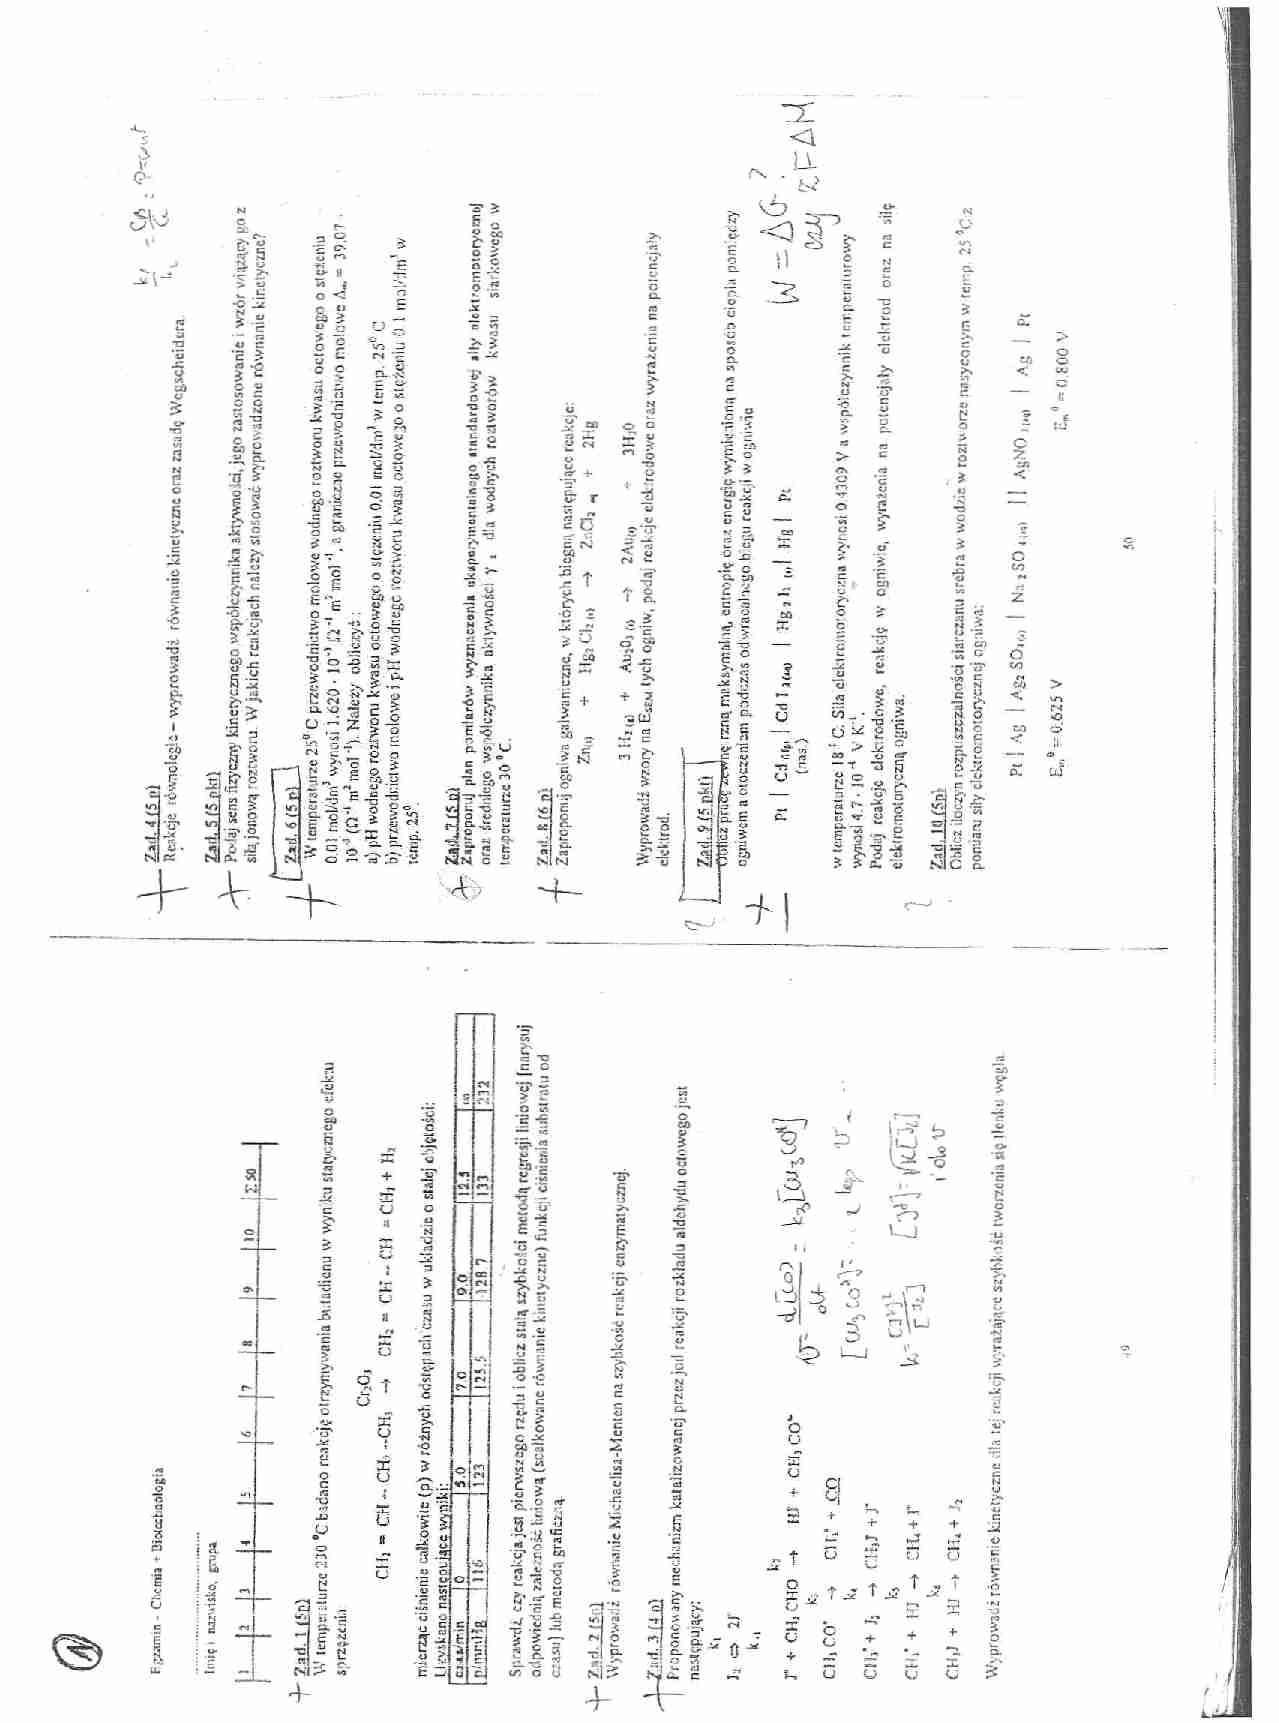 Chemia fizyczna - wykład - reakcja otrzymywania butadienu - strona 1